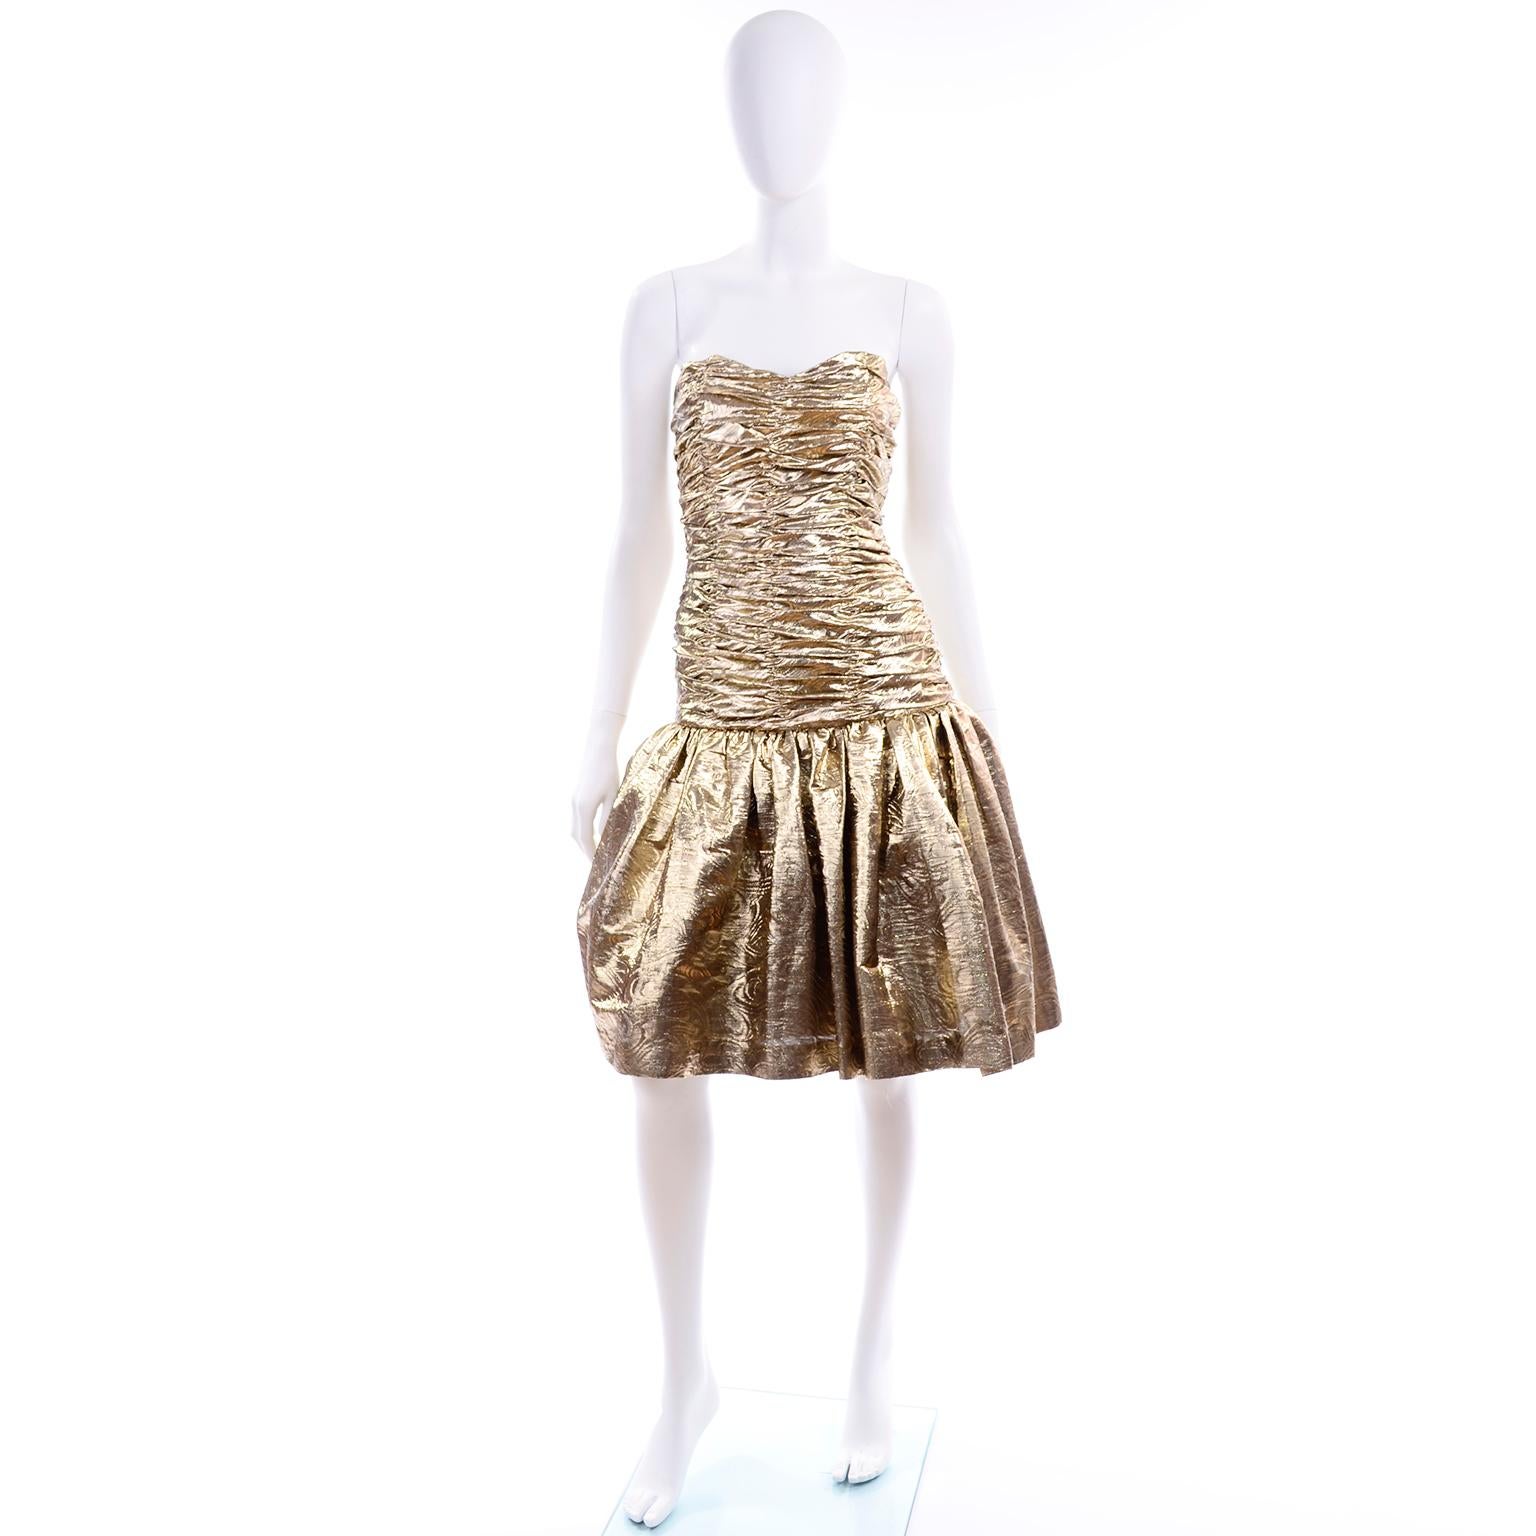 C'est une robe bustier en lurex doré texturé des années 80. Le corsage à taille basse est entièrement froncé et la jupe est doublée d'un jupon de tulle pour plus d'ampleur.  La robe est entièrement doublée en satin et se ferme avec une fermeture